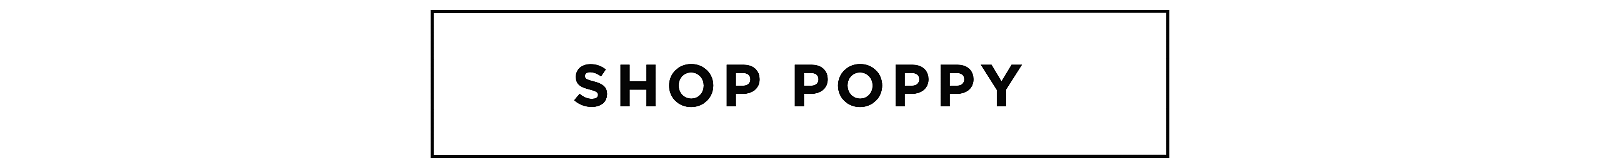 Shop POPPY